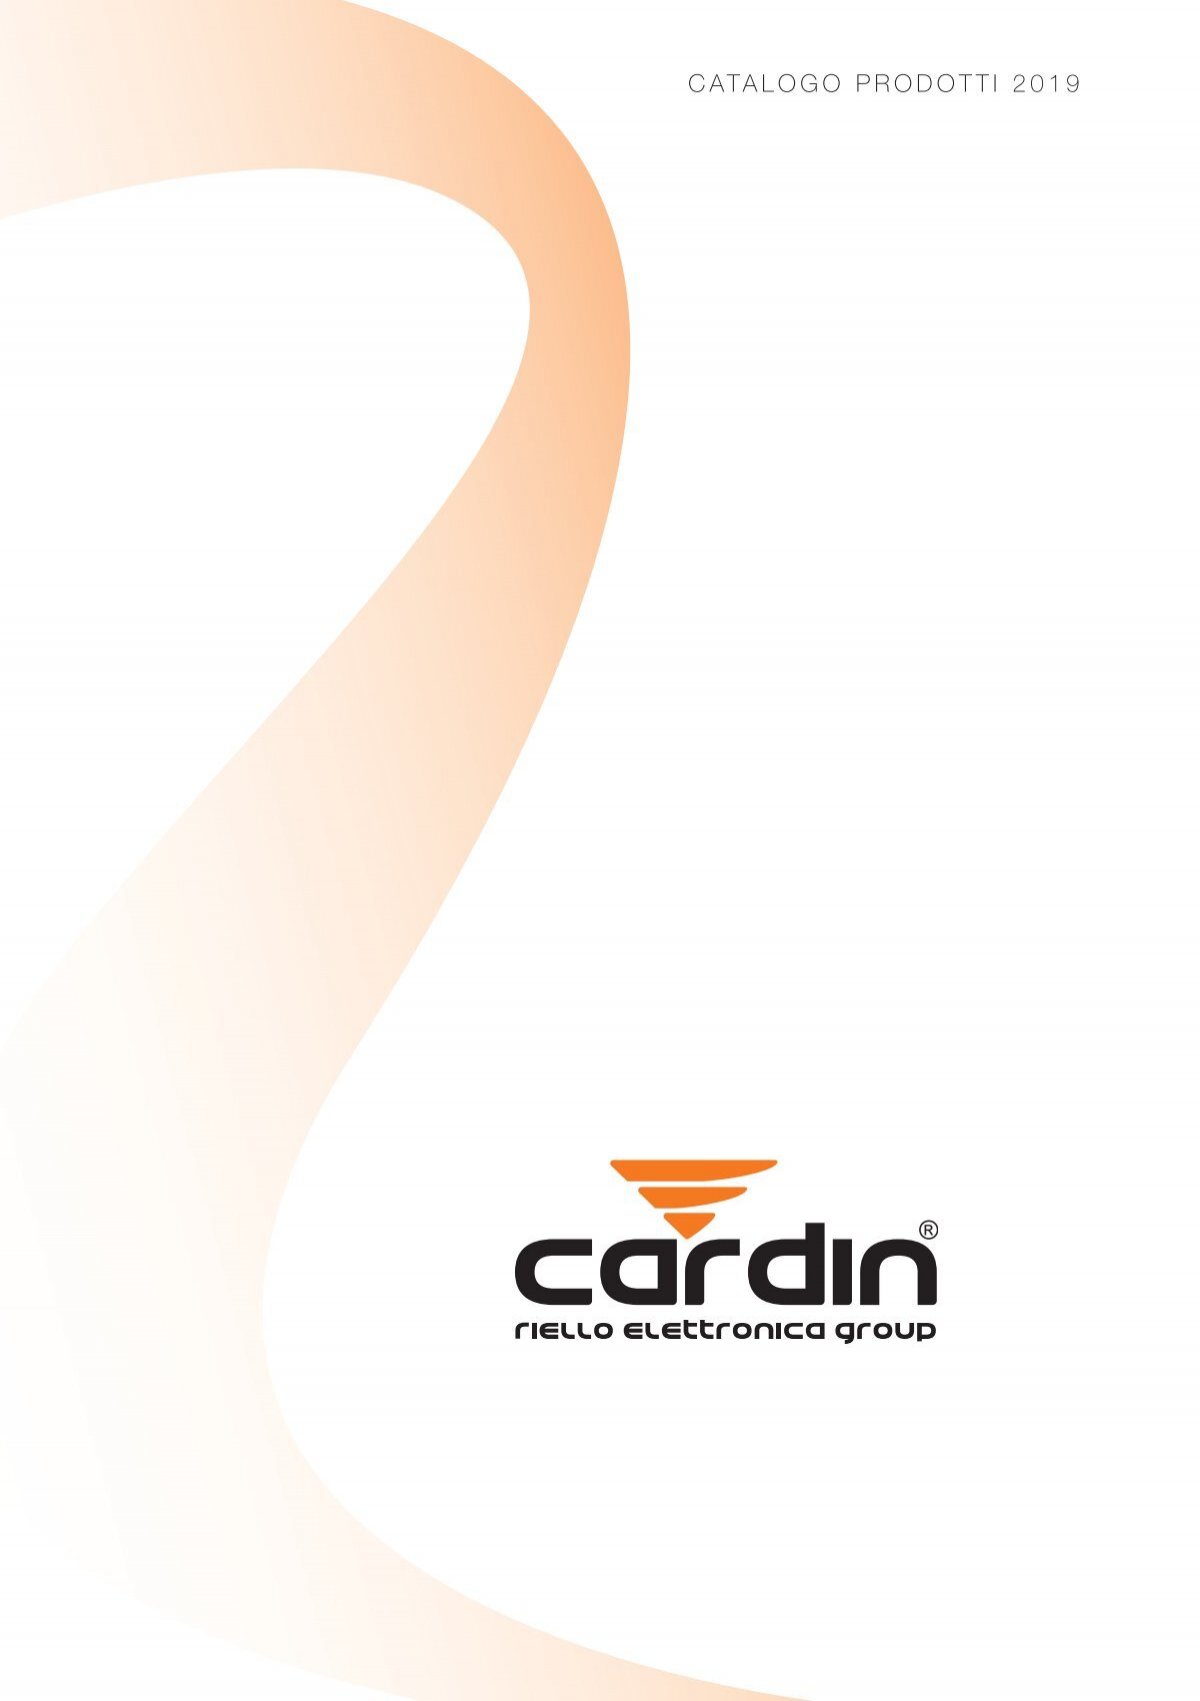 CARDIN Kit alimentazione a pannello solare per automazione cancelli 24v con  motoriduttori 24Vdc anche in assenza elettricità SunPower